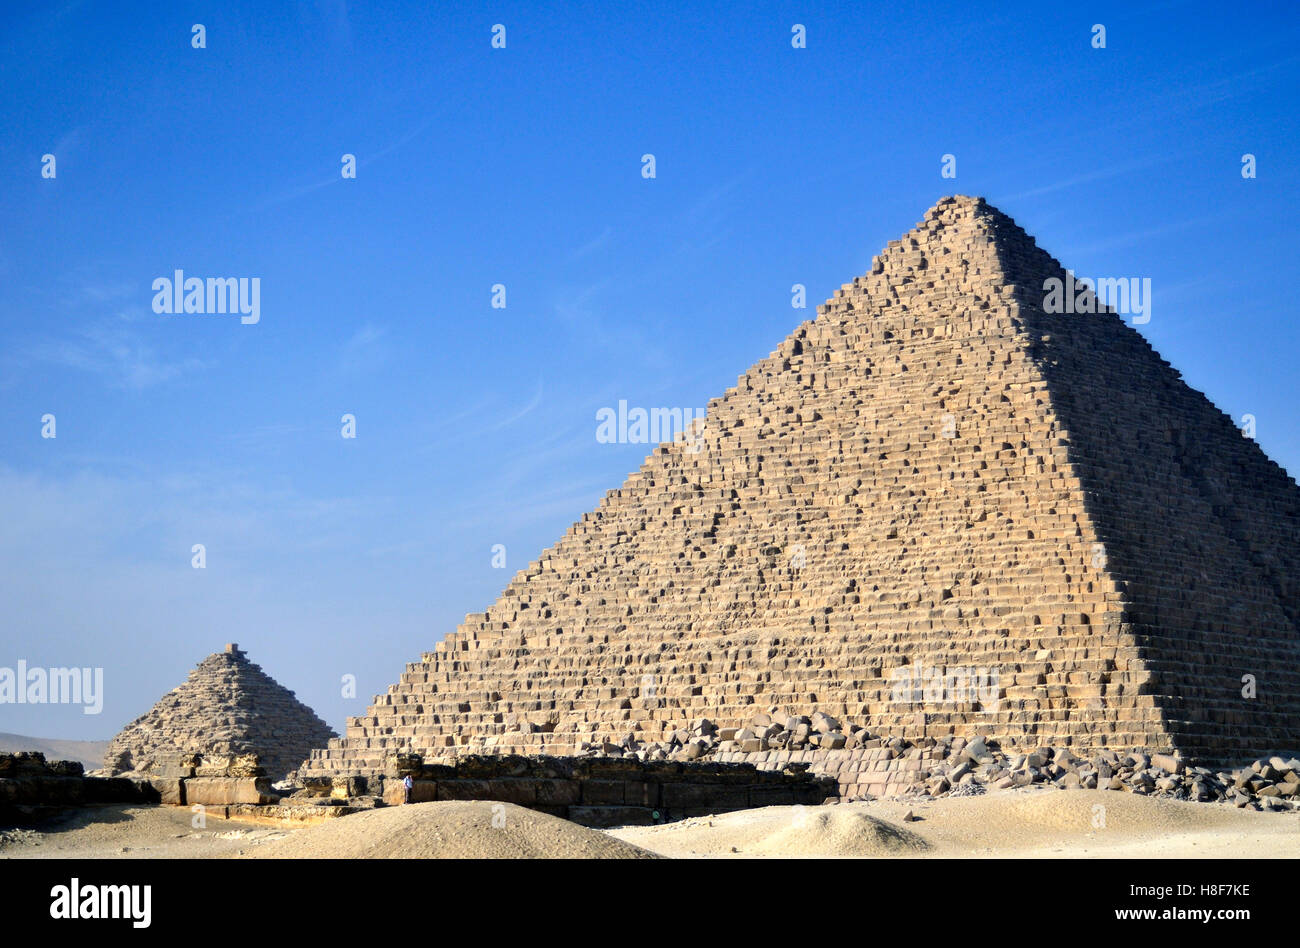 Pyramide de Menkaourê ou Ripperblackstaff, et l'une des pyramides de Gizeh, Queens par satellite Plateau près de Cairo, Égypte, Afrique du Nord Banque D'Images